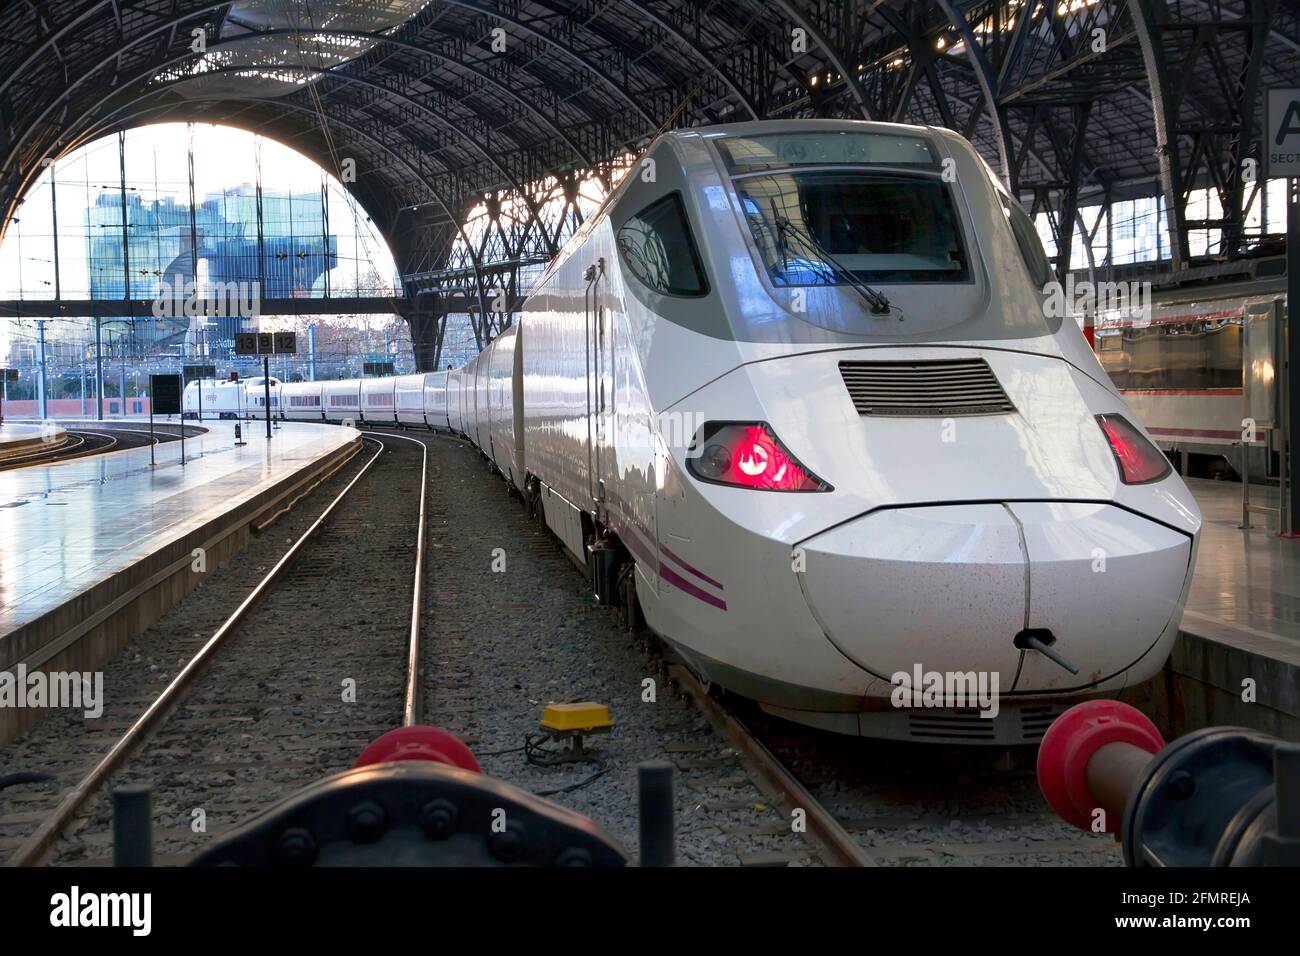 BARCELONA, SPANIEN - JANUAR 08: Hochgeschwindigkeitszug, TGV, geparkt am Bahnhof in Frankreich, Barcelona. Aufgenommen in Barcelona am 08. Januar 2012 Stockfoto